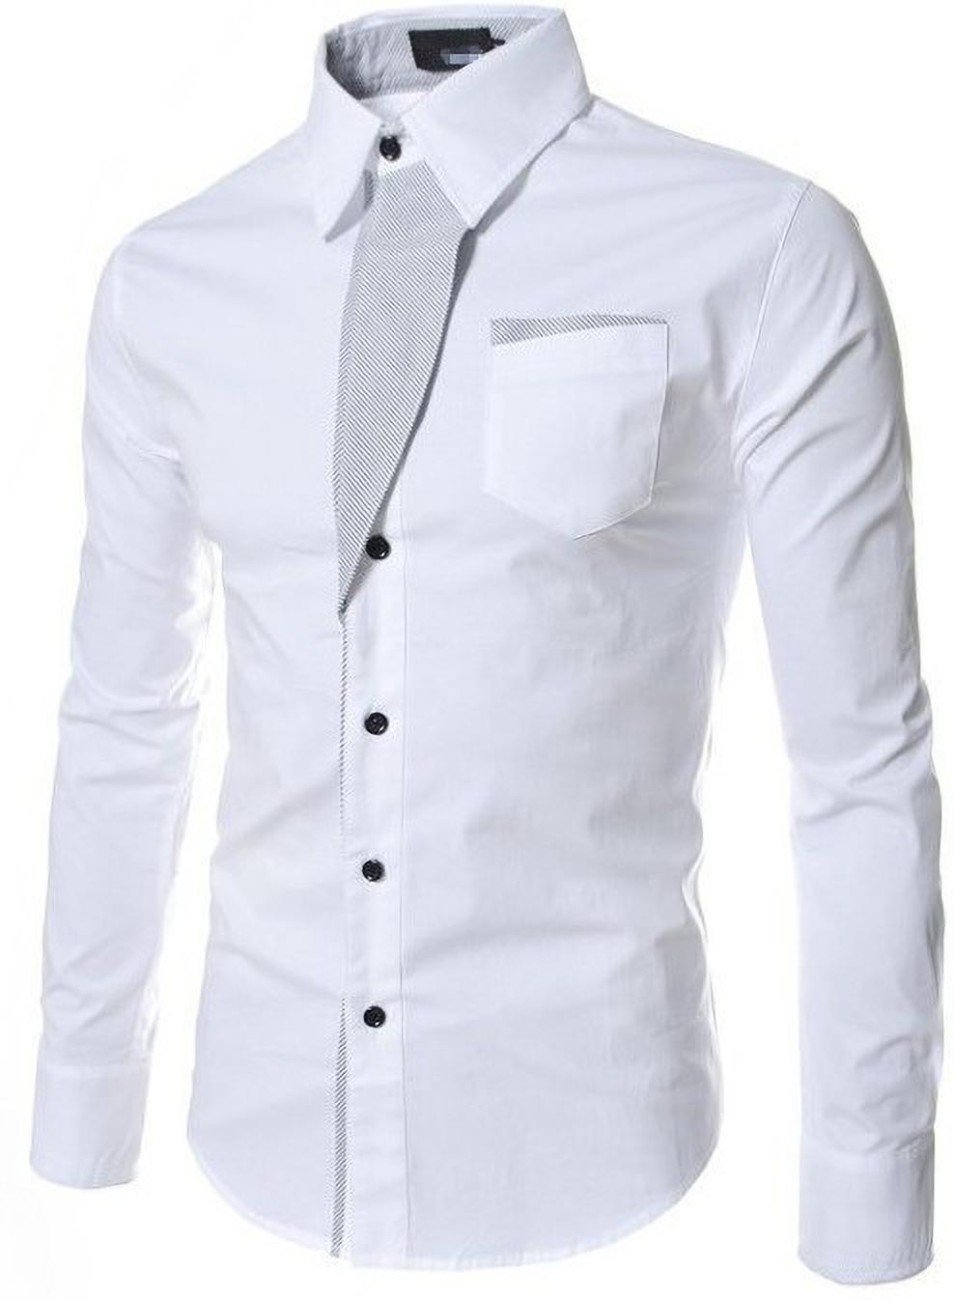 Panchhi creation Men Solid Formal White Shirt - Buy Panchhi ...